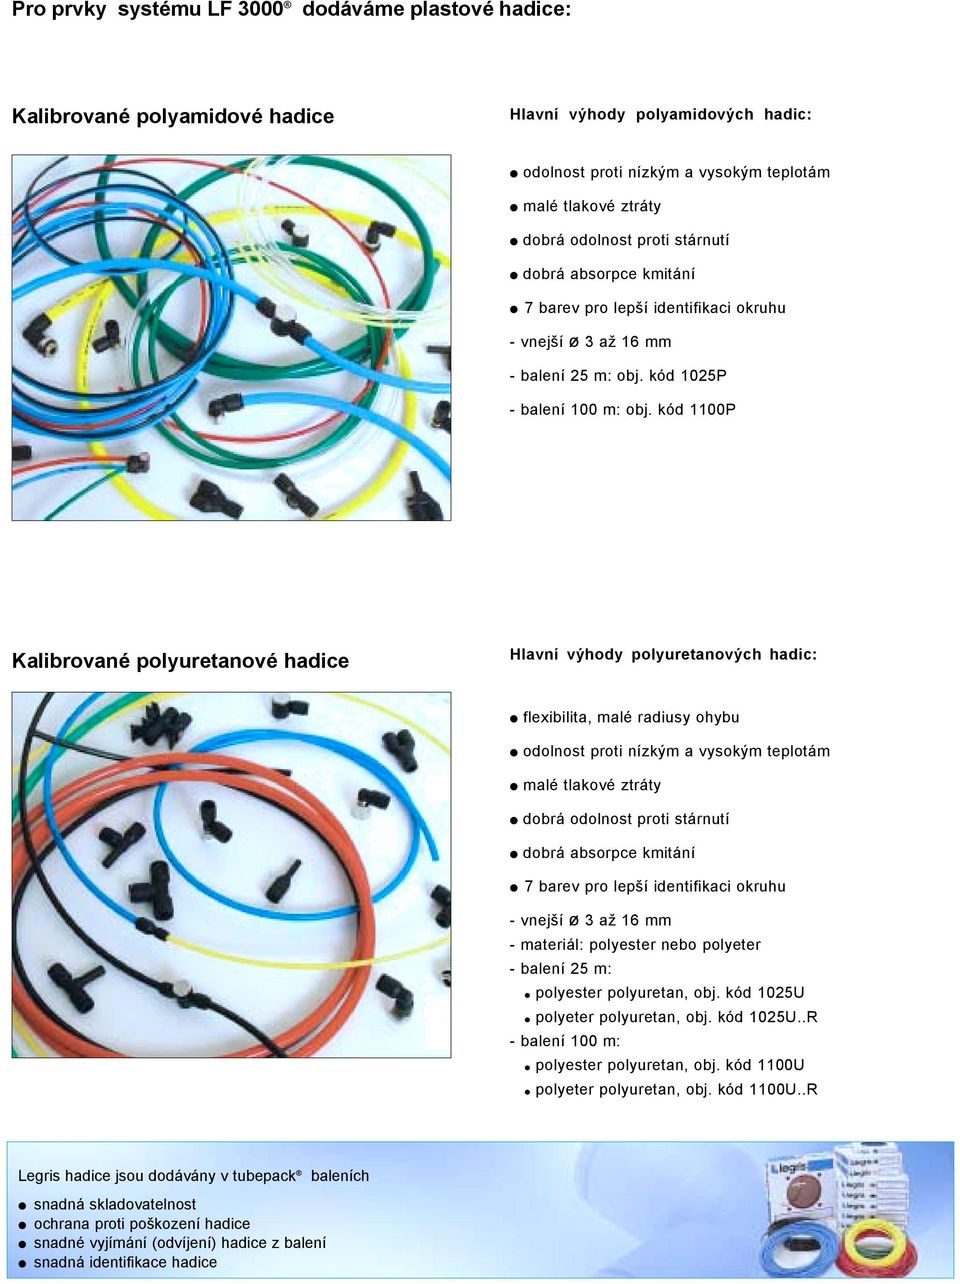 kód 1100P Kalibrované polyuretanové hadice Hlavní výhody polyuretanových hadic: flexibilita, malé radiusy ohybu odolnost proti nízkým a vysokým teplotám malé tlakové ztráty dobrá odolnost proti